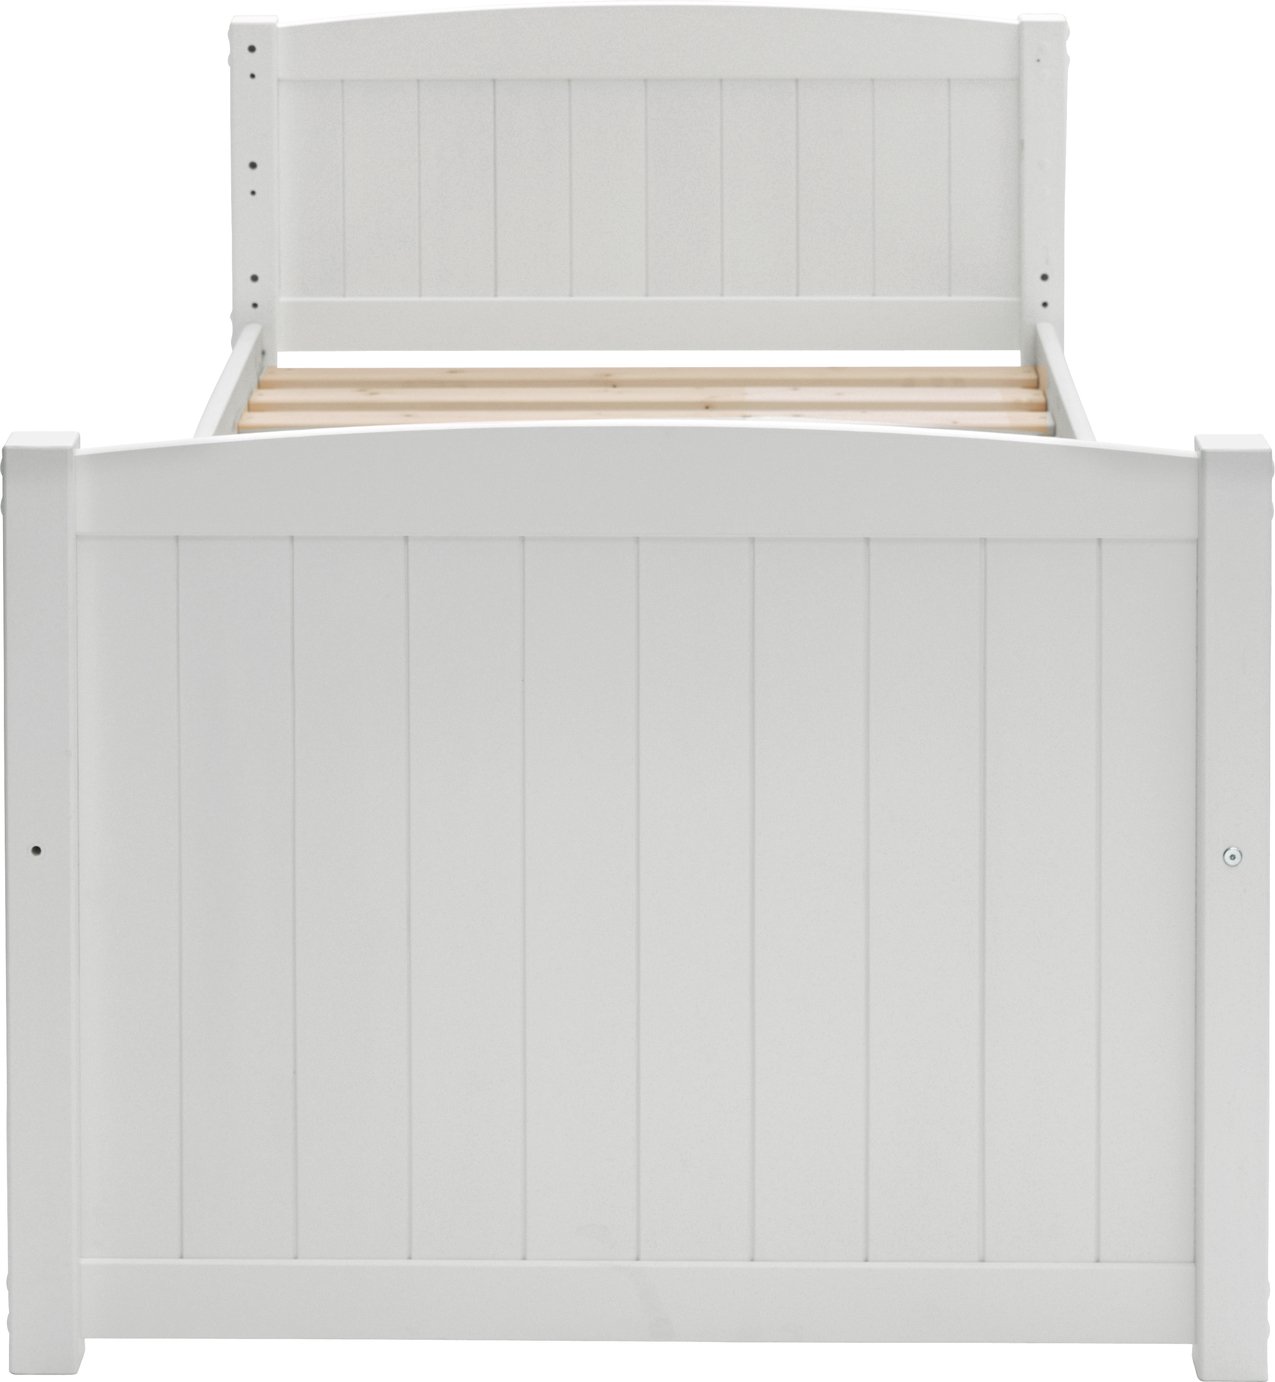 Argos Home Leigh White Detachable Single Bunk Bed Frame Review